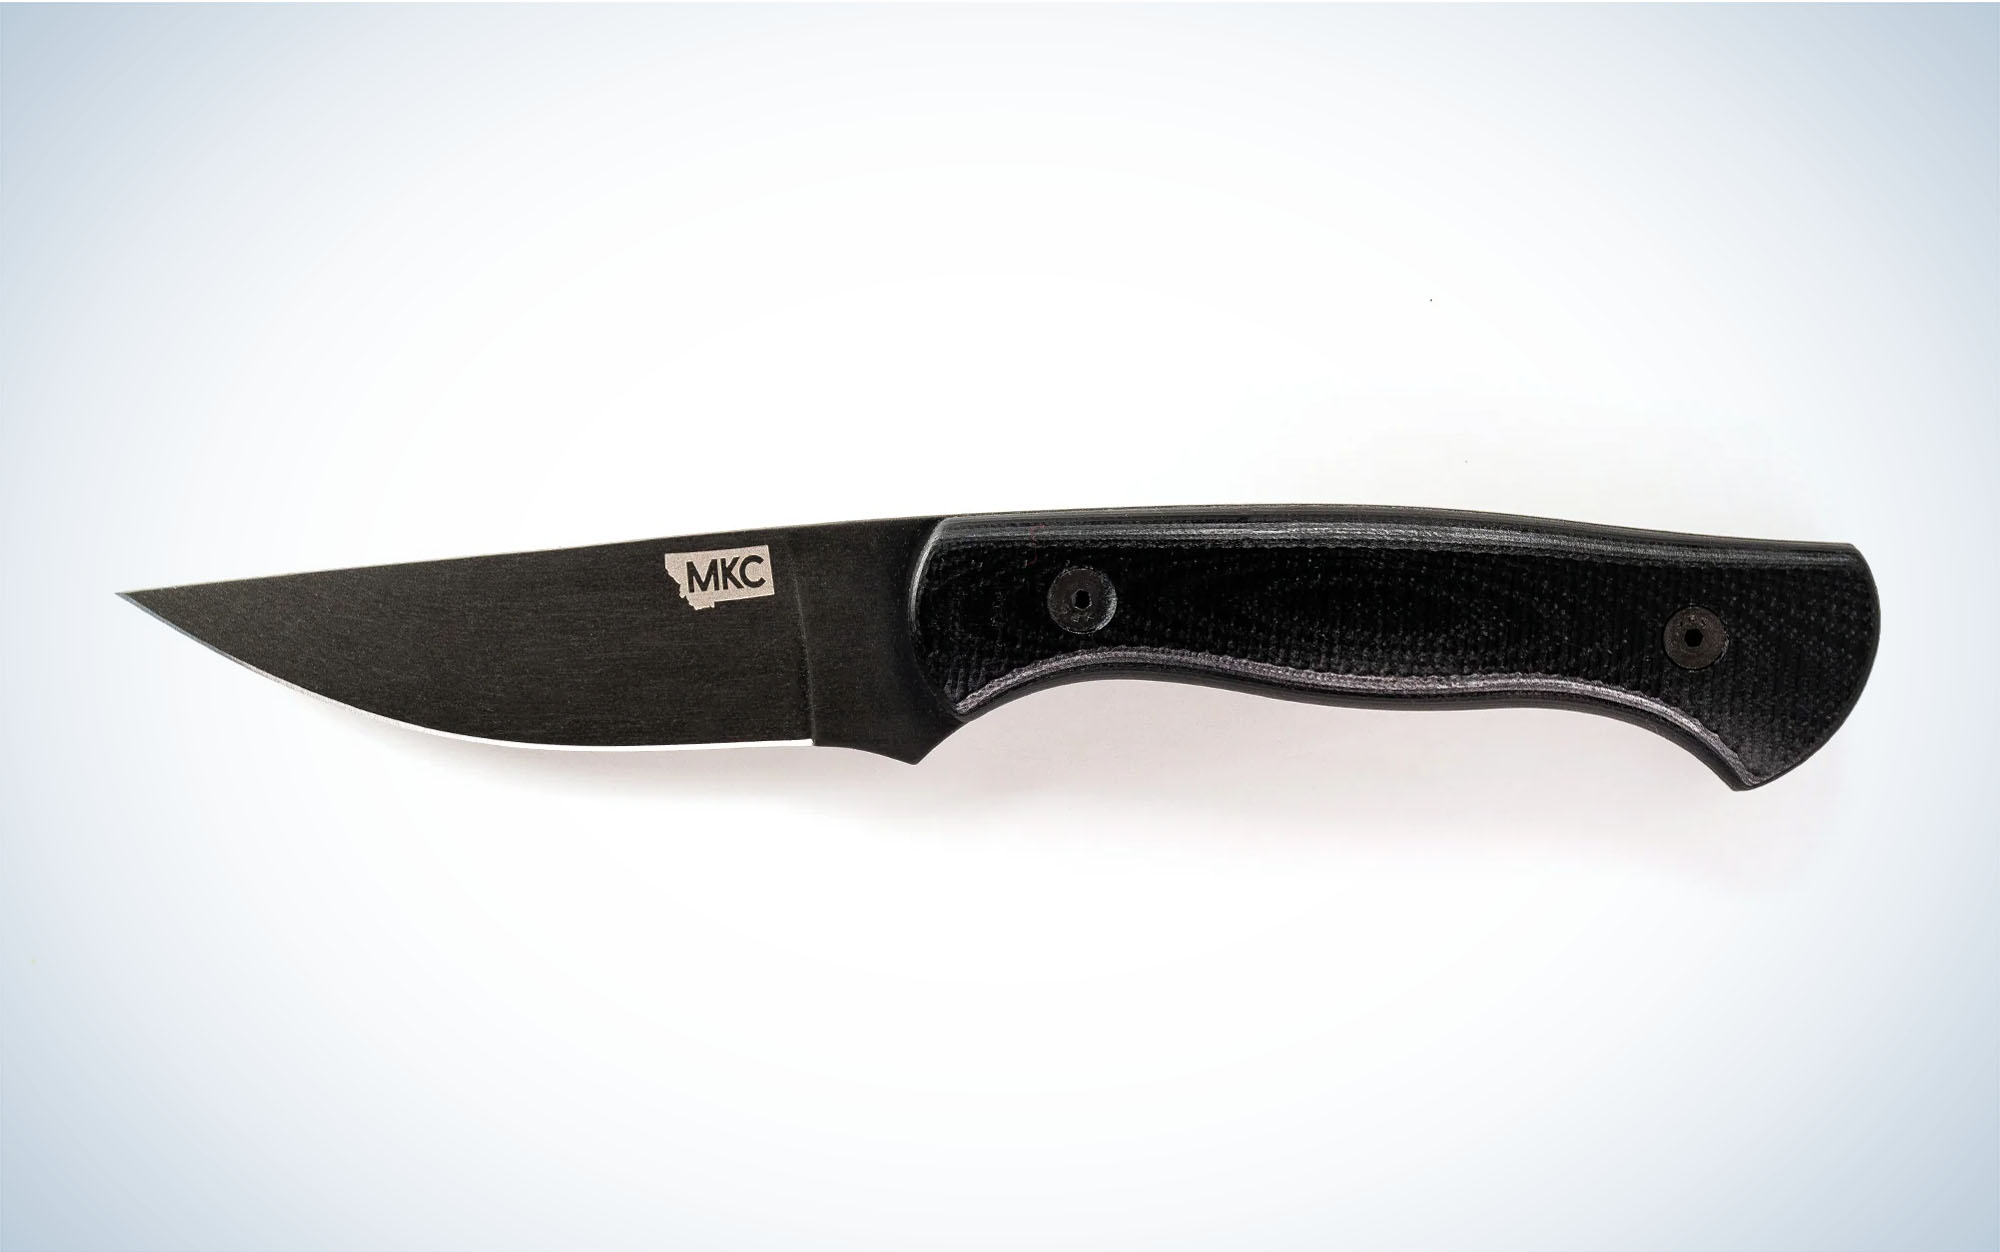 We tested the Montana Knife Company Blackfoot 2.0.